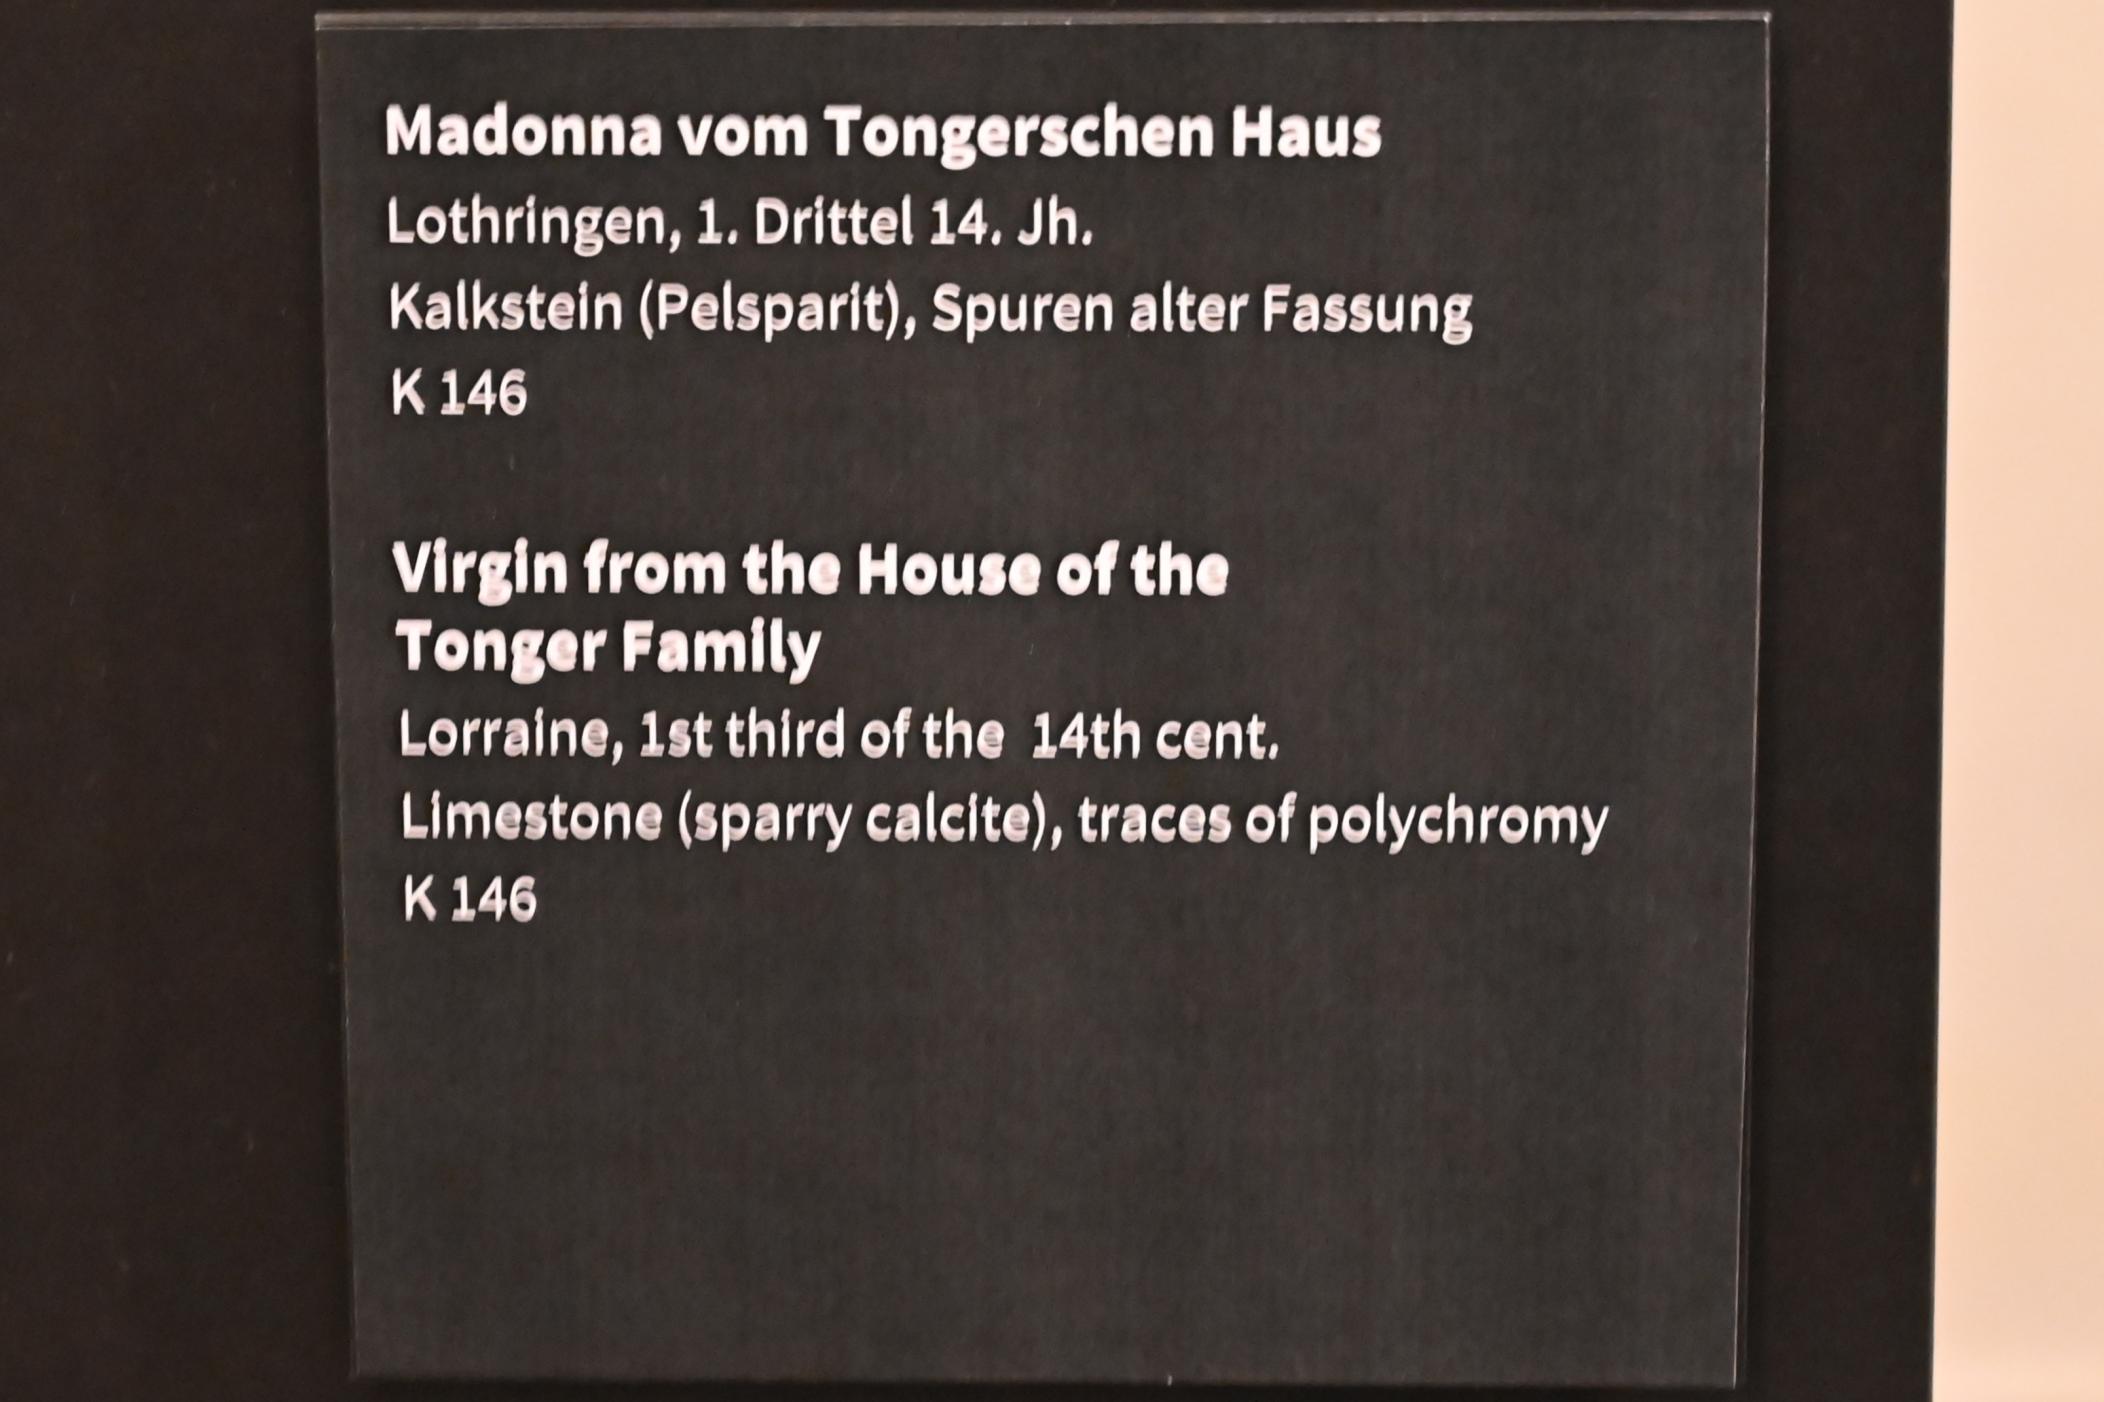 Madonna vom Tongerschen Haus, Köln, Museum Schnütgen, Saal 6, 1. Drittel 14. Jhd., Bild 2/2